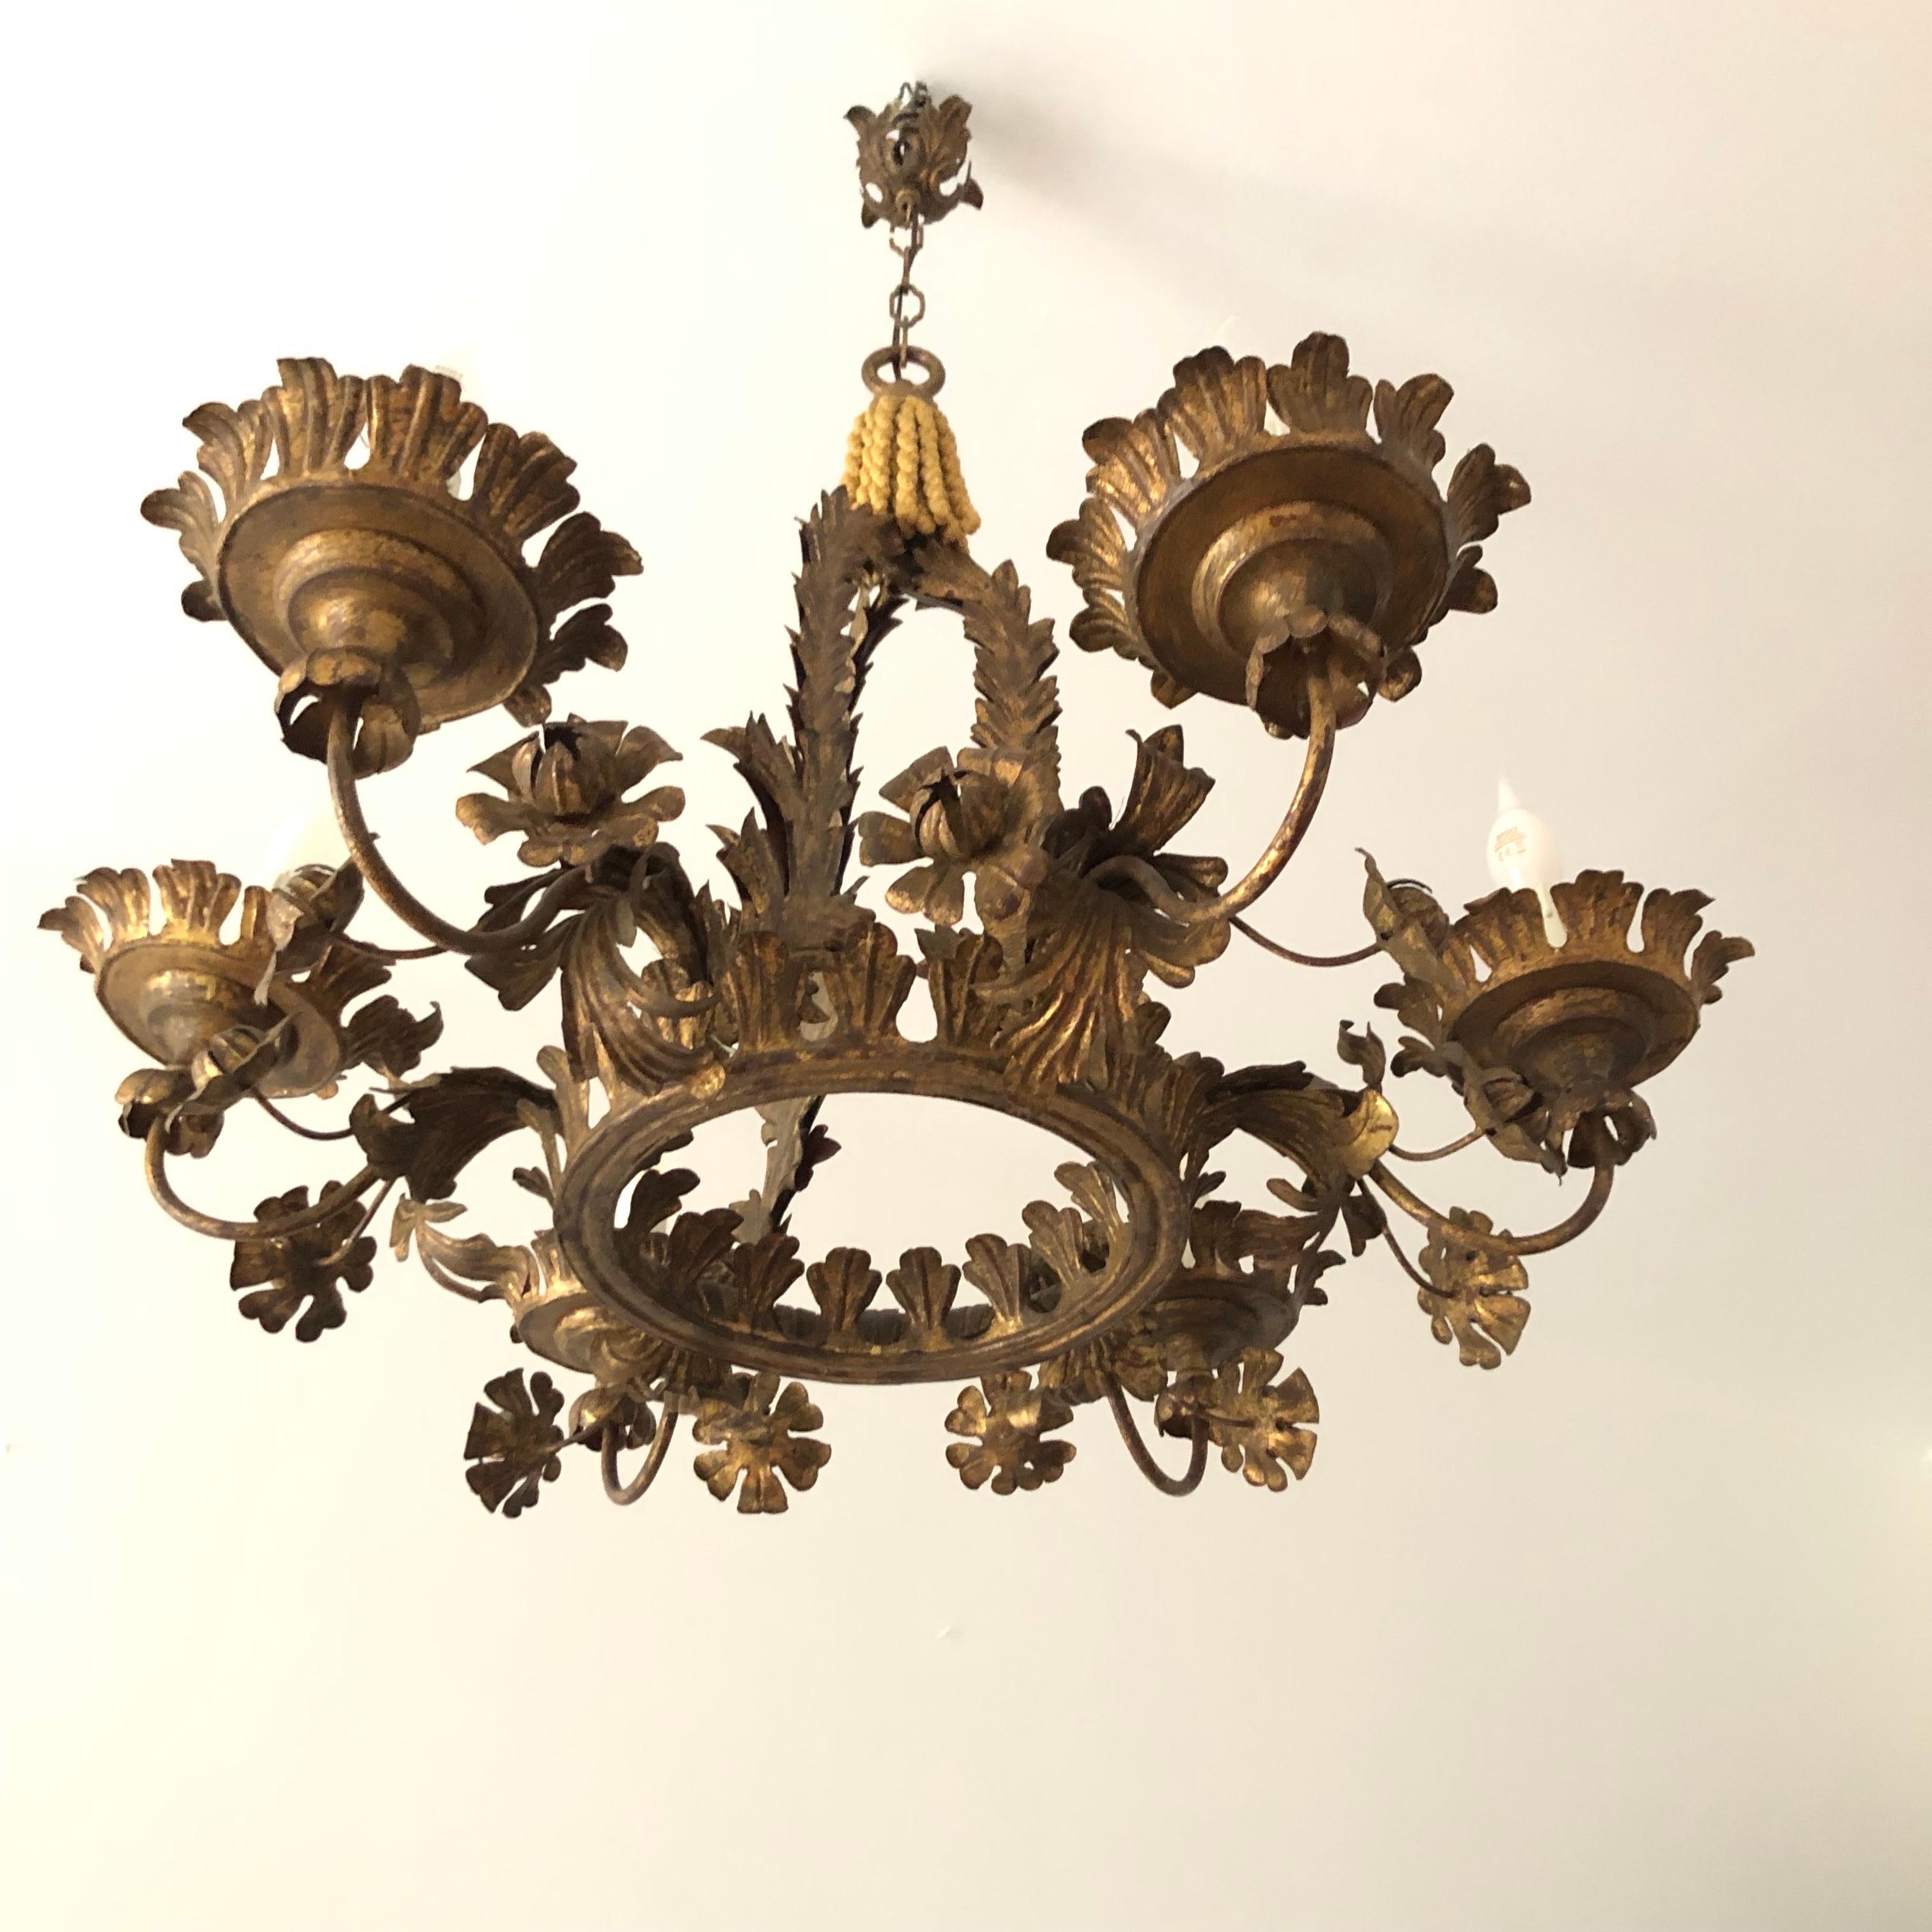 Antico lampadario fiorentino fogliato con decorazioni floreali  realizzato alla fine del XIX secolo in ferro dorato e sei luci.  Lampadario d'epoca italiano, di forma circolare  caratterizzato da un design riccamente decorato con foglie e fiori e